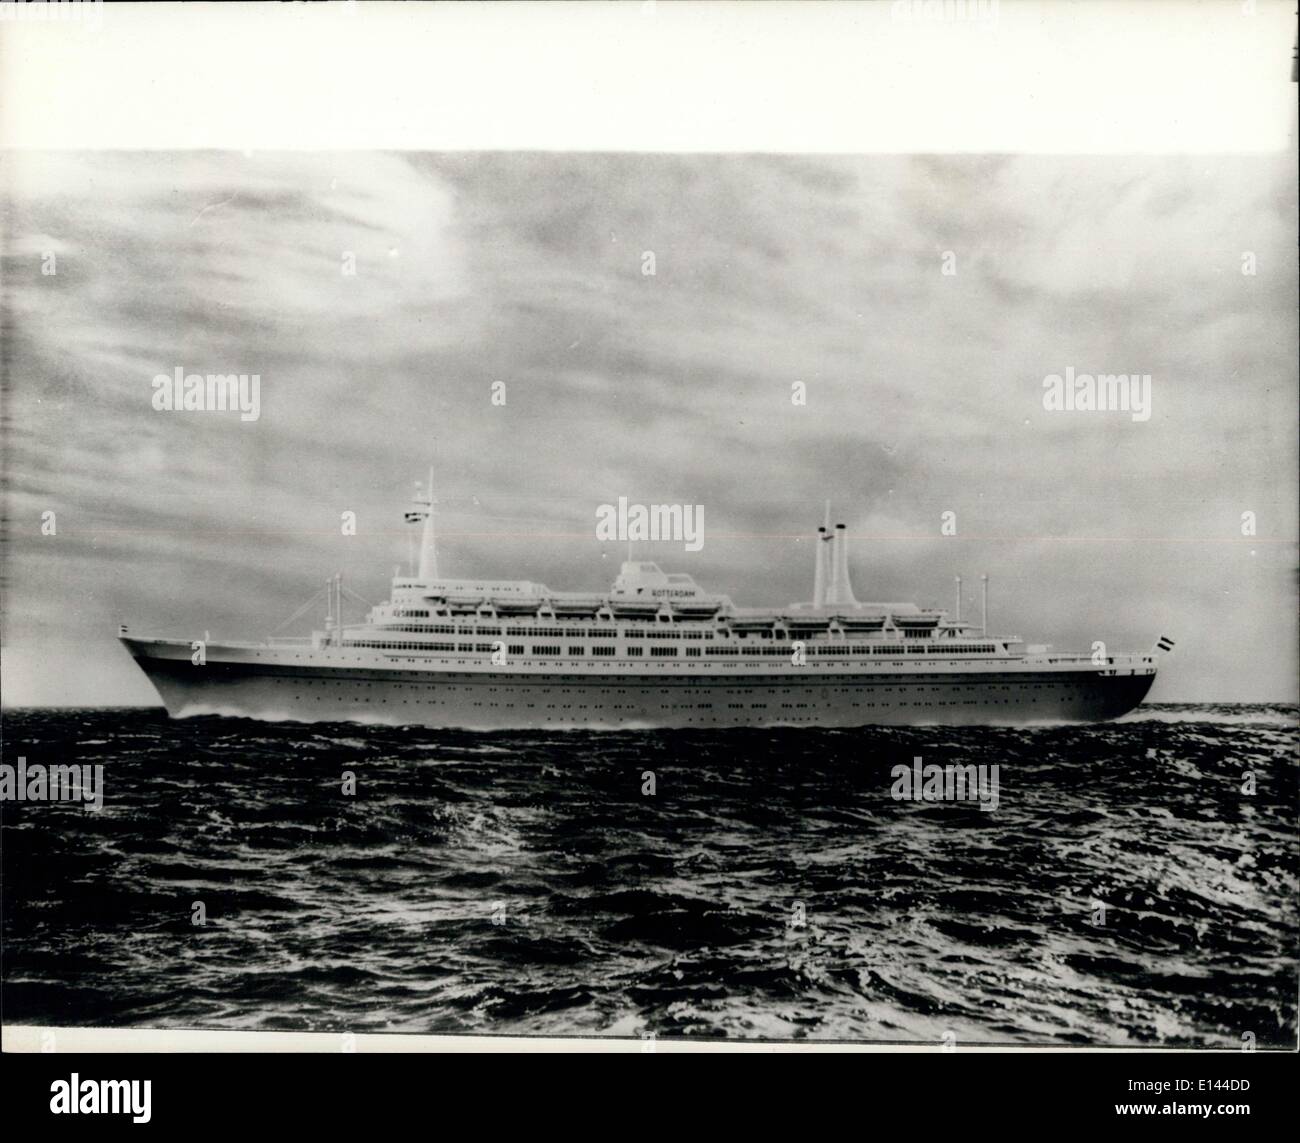 04 avril 2012 - La reine Juliana de lancer le S.S. Rotterdam : la reine Juliana des Pays-Bas est de lancer le s.s. Rotterdam, nouveau navire amiral de la paquebot, au chantiers de l'entreprise de l'arsenal de Rotterdam, le samedi 13 septembre. Le navire qui finira par avoir un tonnage d'environ 37 000, poids 18 500 tonnes au moment du lancement. La quille a été posée le 14. Décembre 1956, et elle devrait faire de son premier voyage à l'automne 1959 Banque D'Images